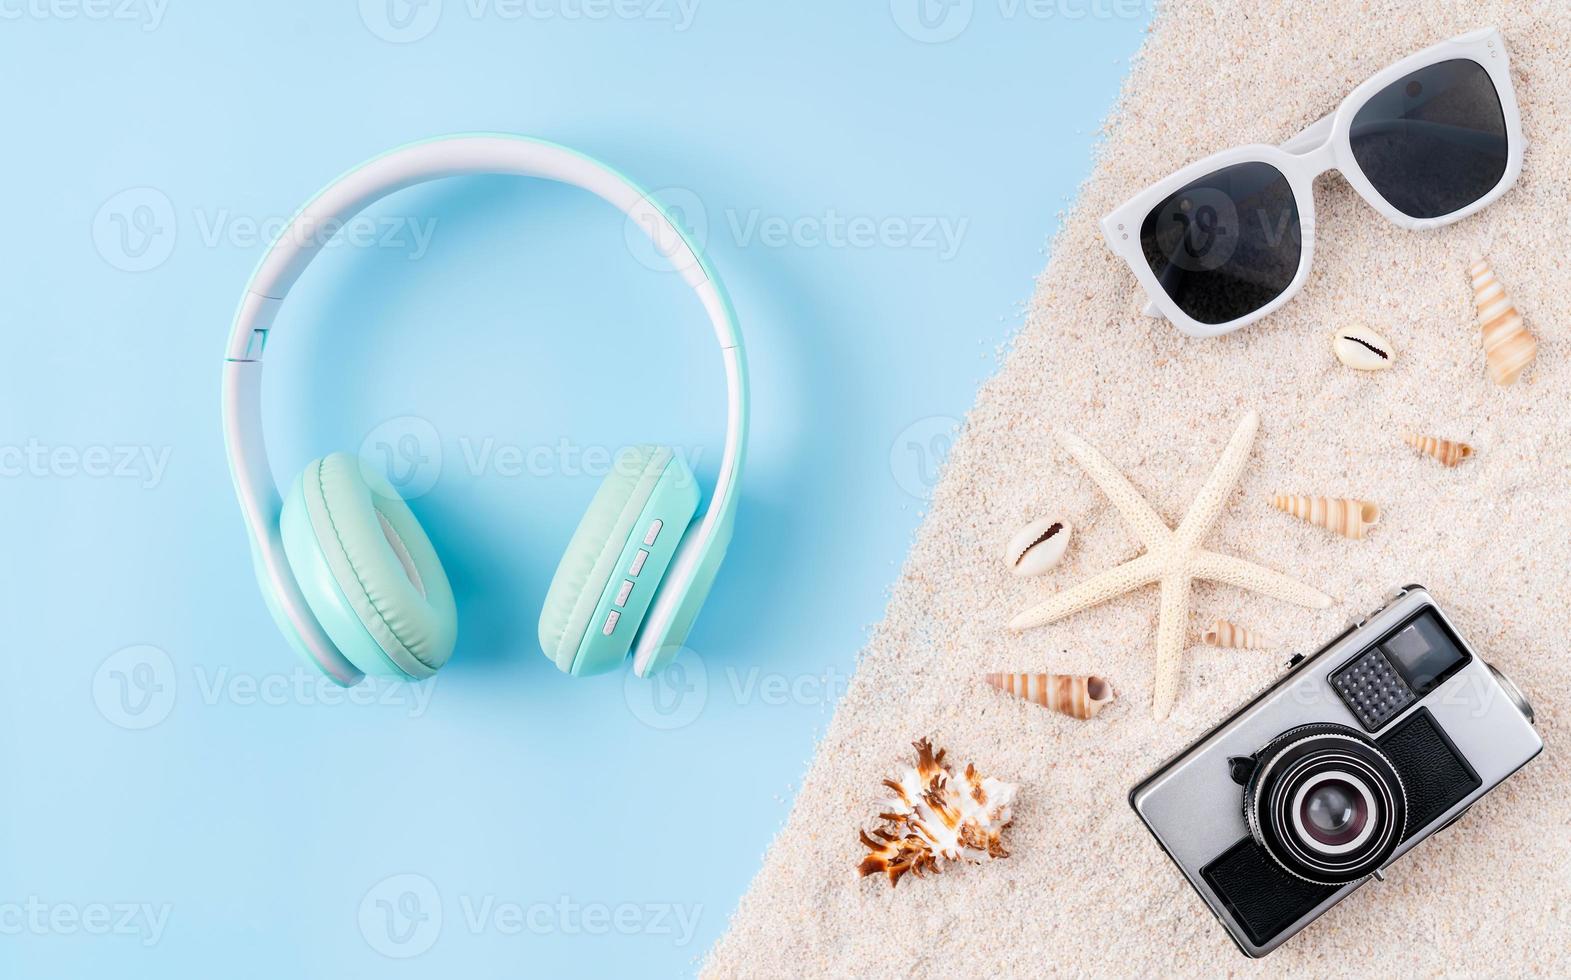 vista superior de auriculares inalámbricos y cámara, gafas de sol en sandalias con fondo azul. foto